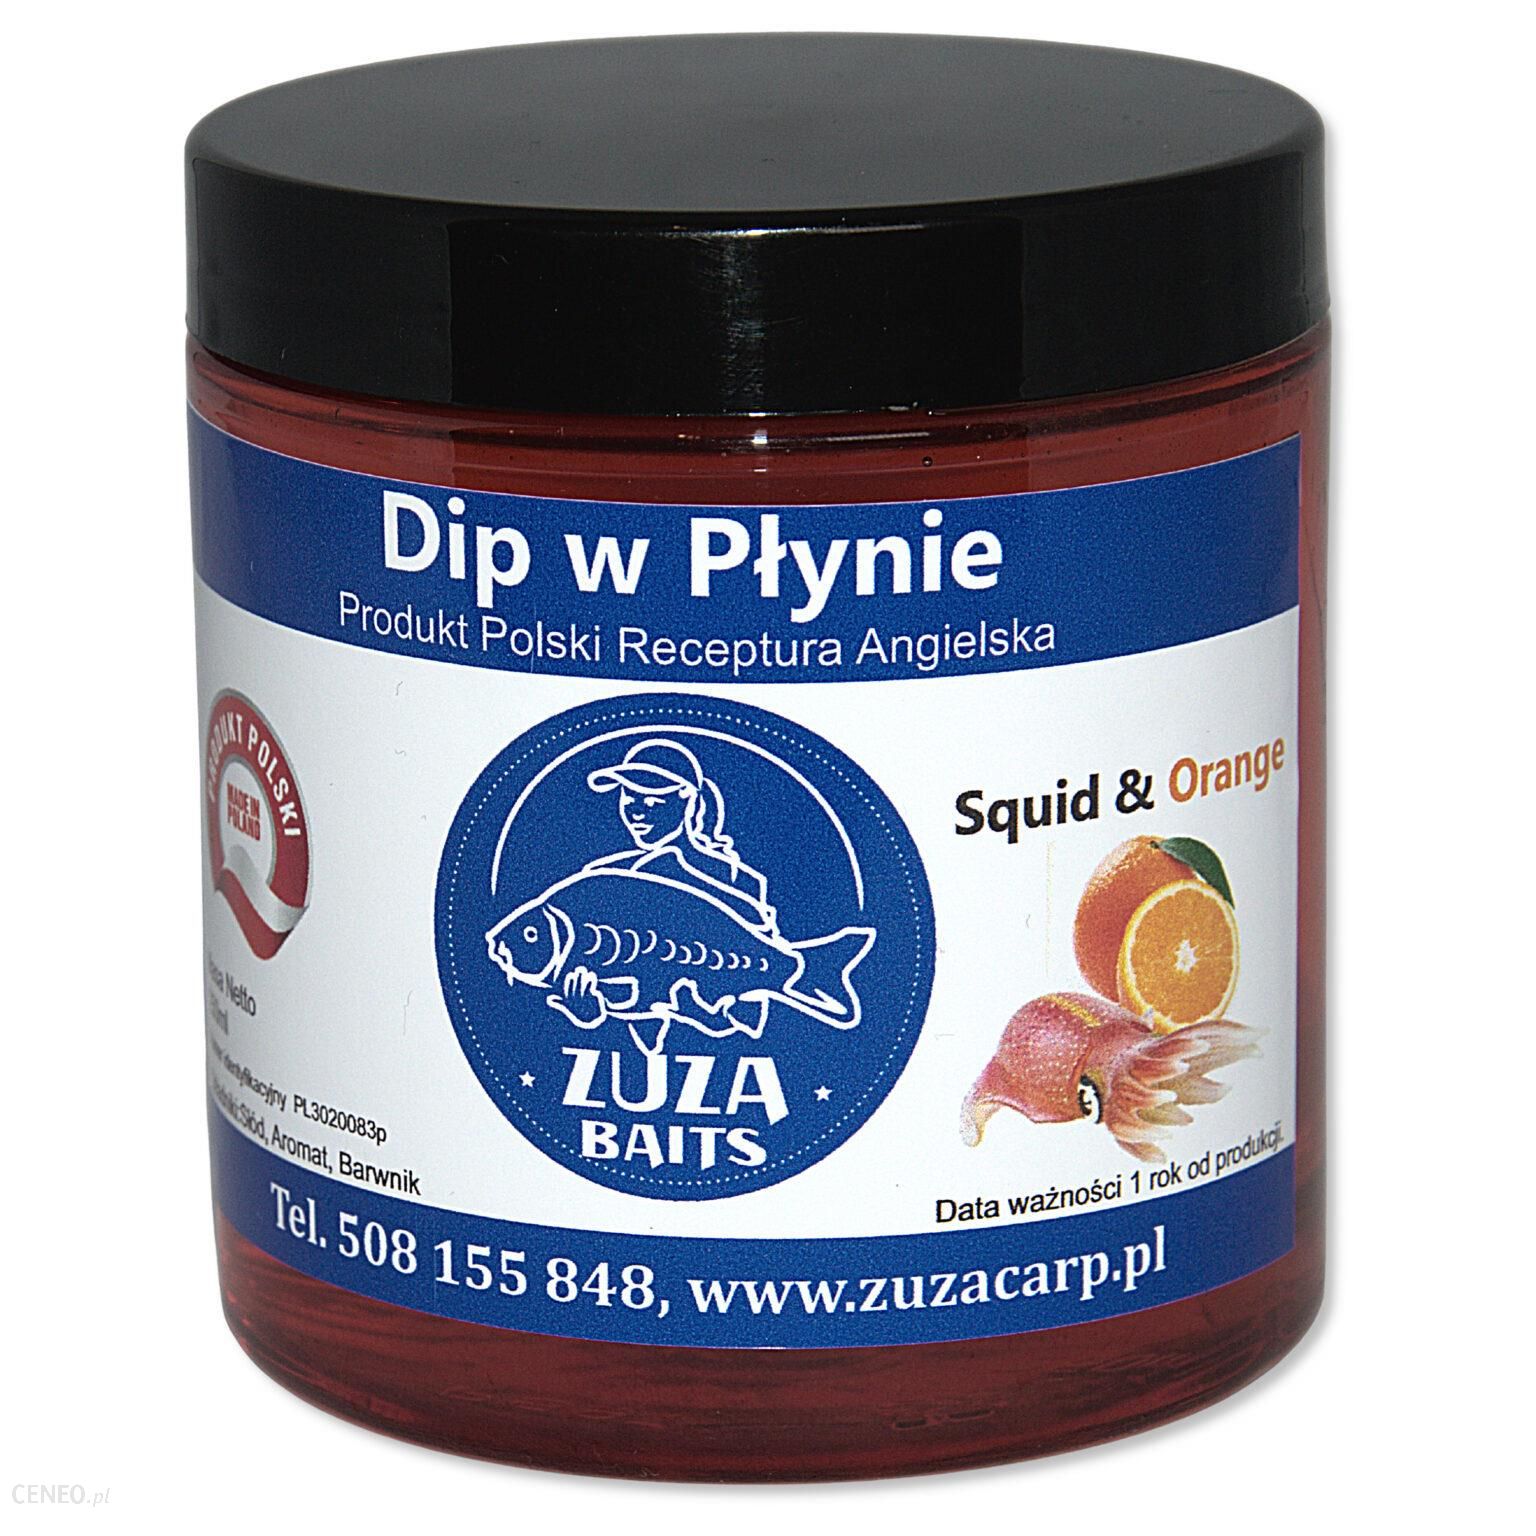 Zuza Carp Dip Squid & Orange (W Płynie) 250Ml